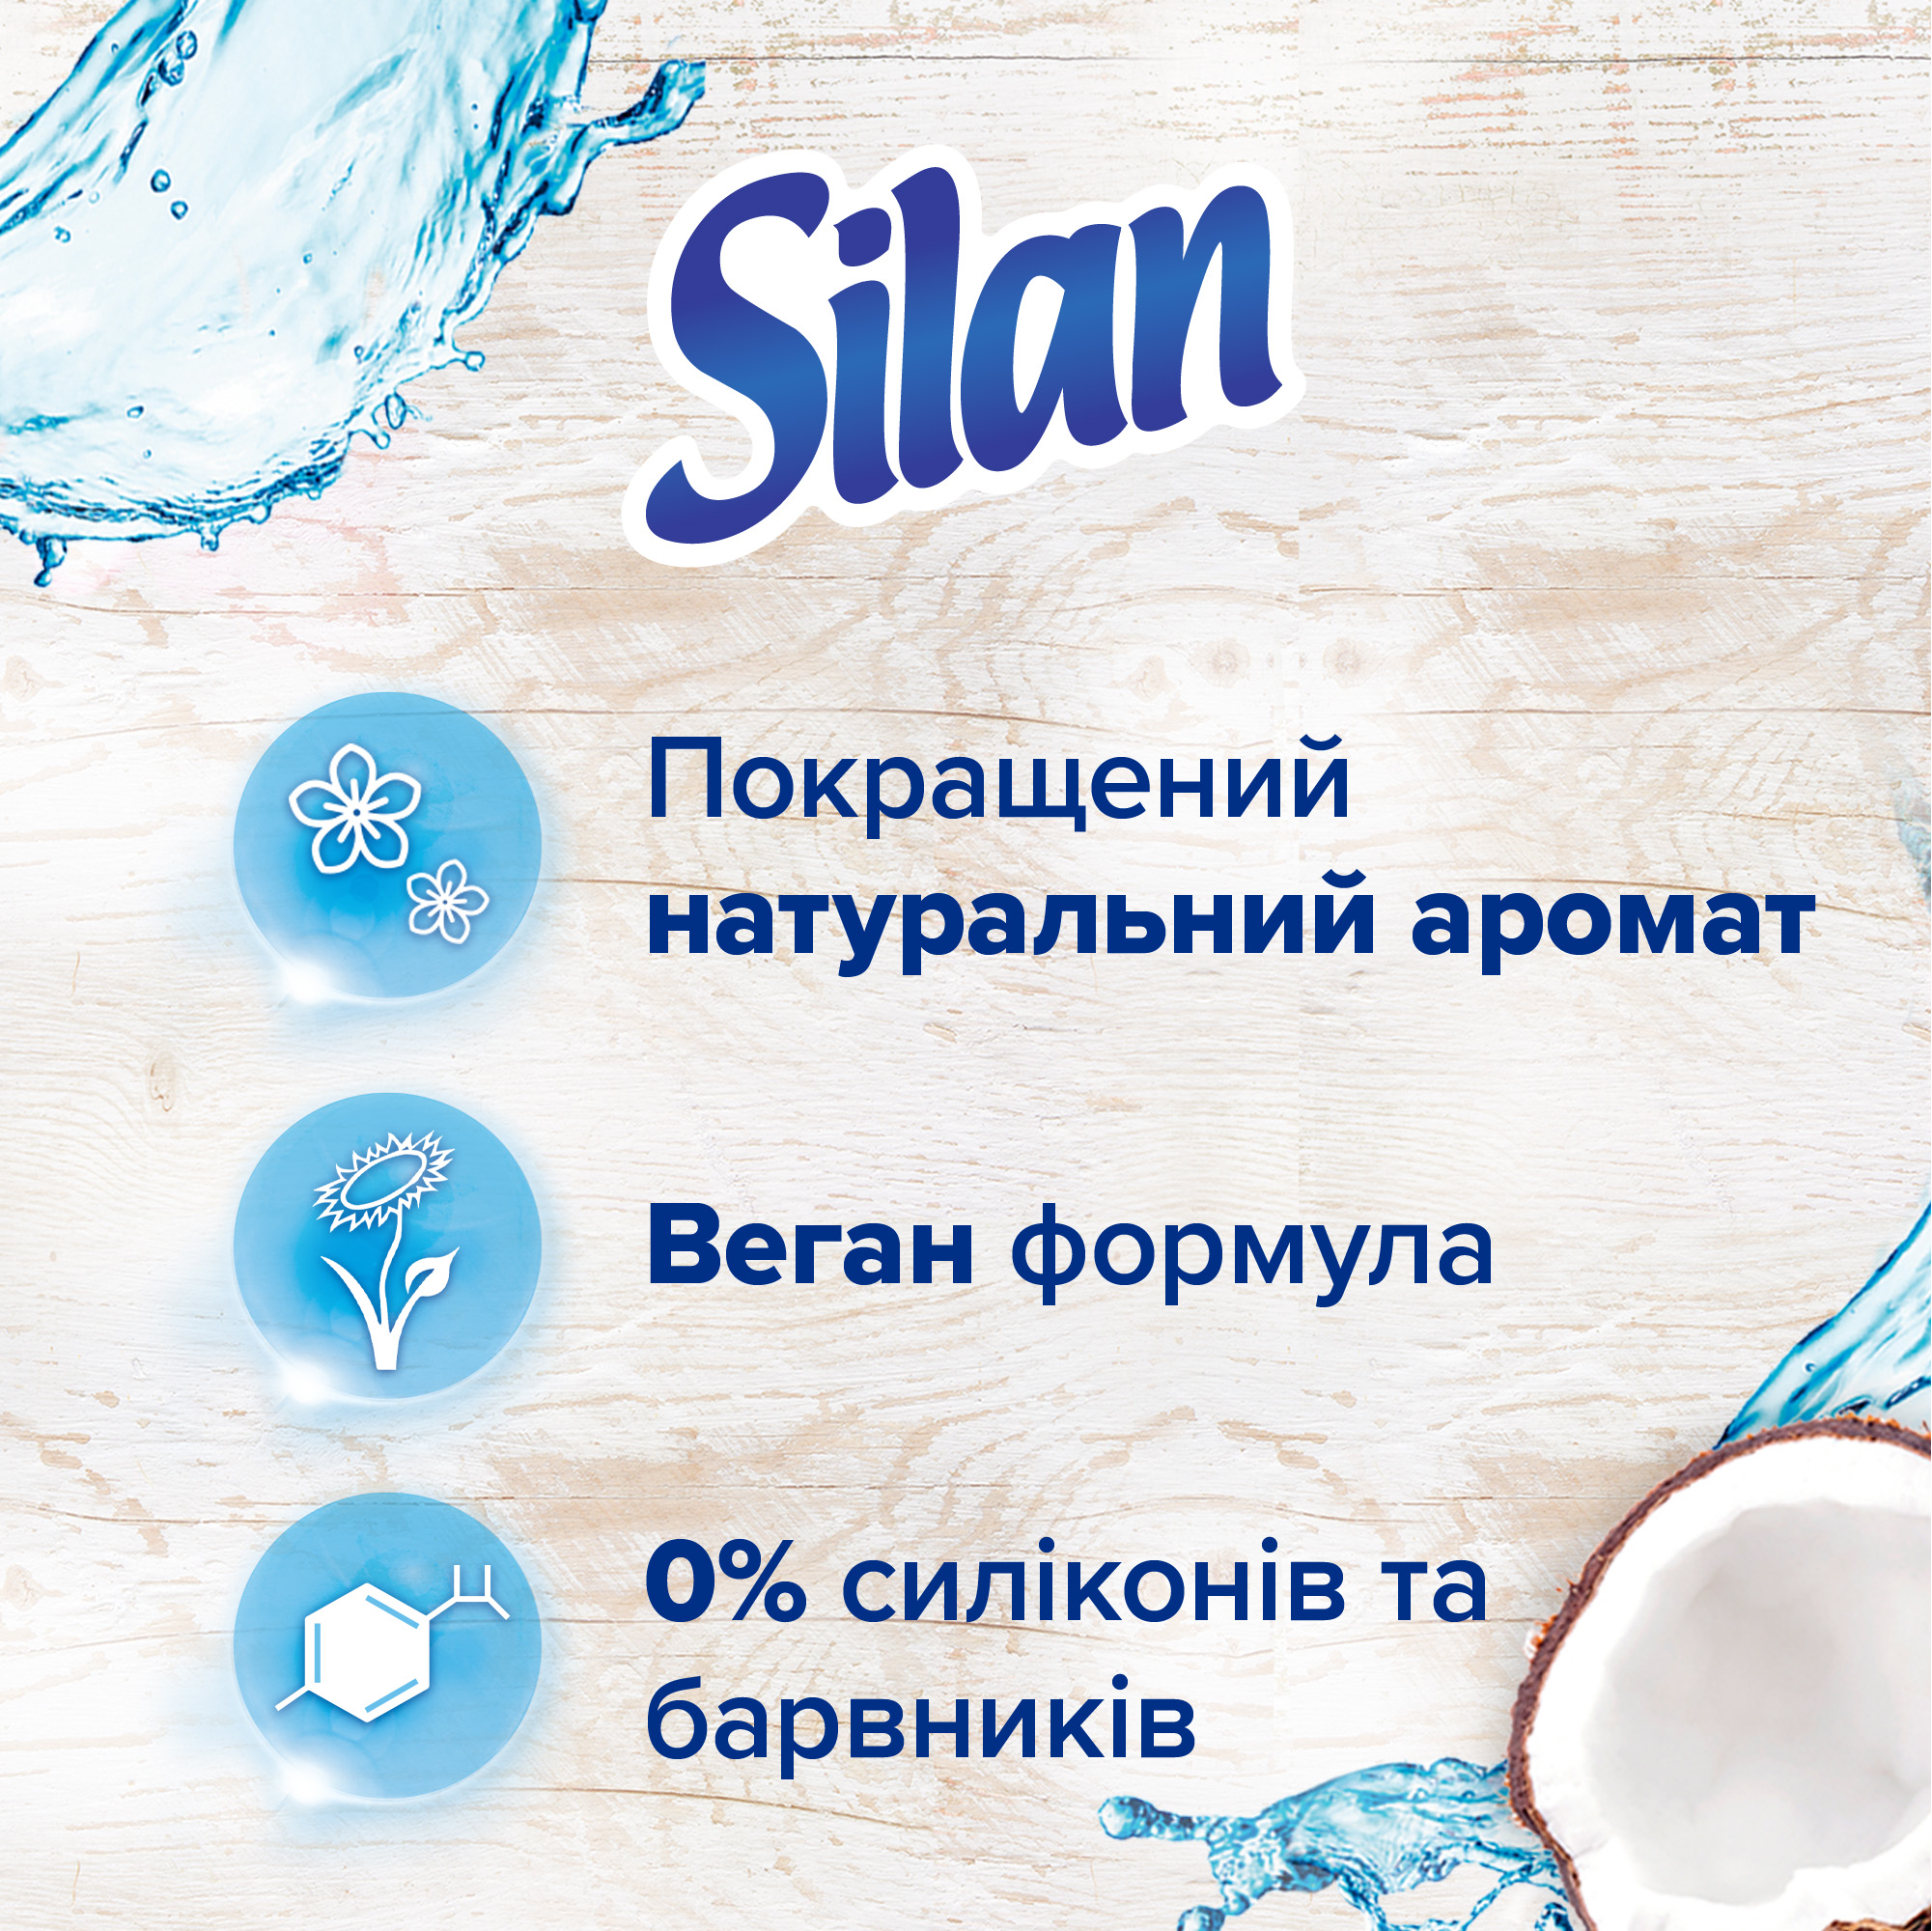 Кондиционер для белья Silan Naturals Аромат кокосовой воды 1.1 л - фото 3